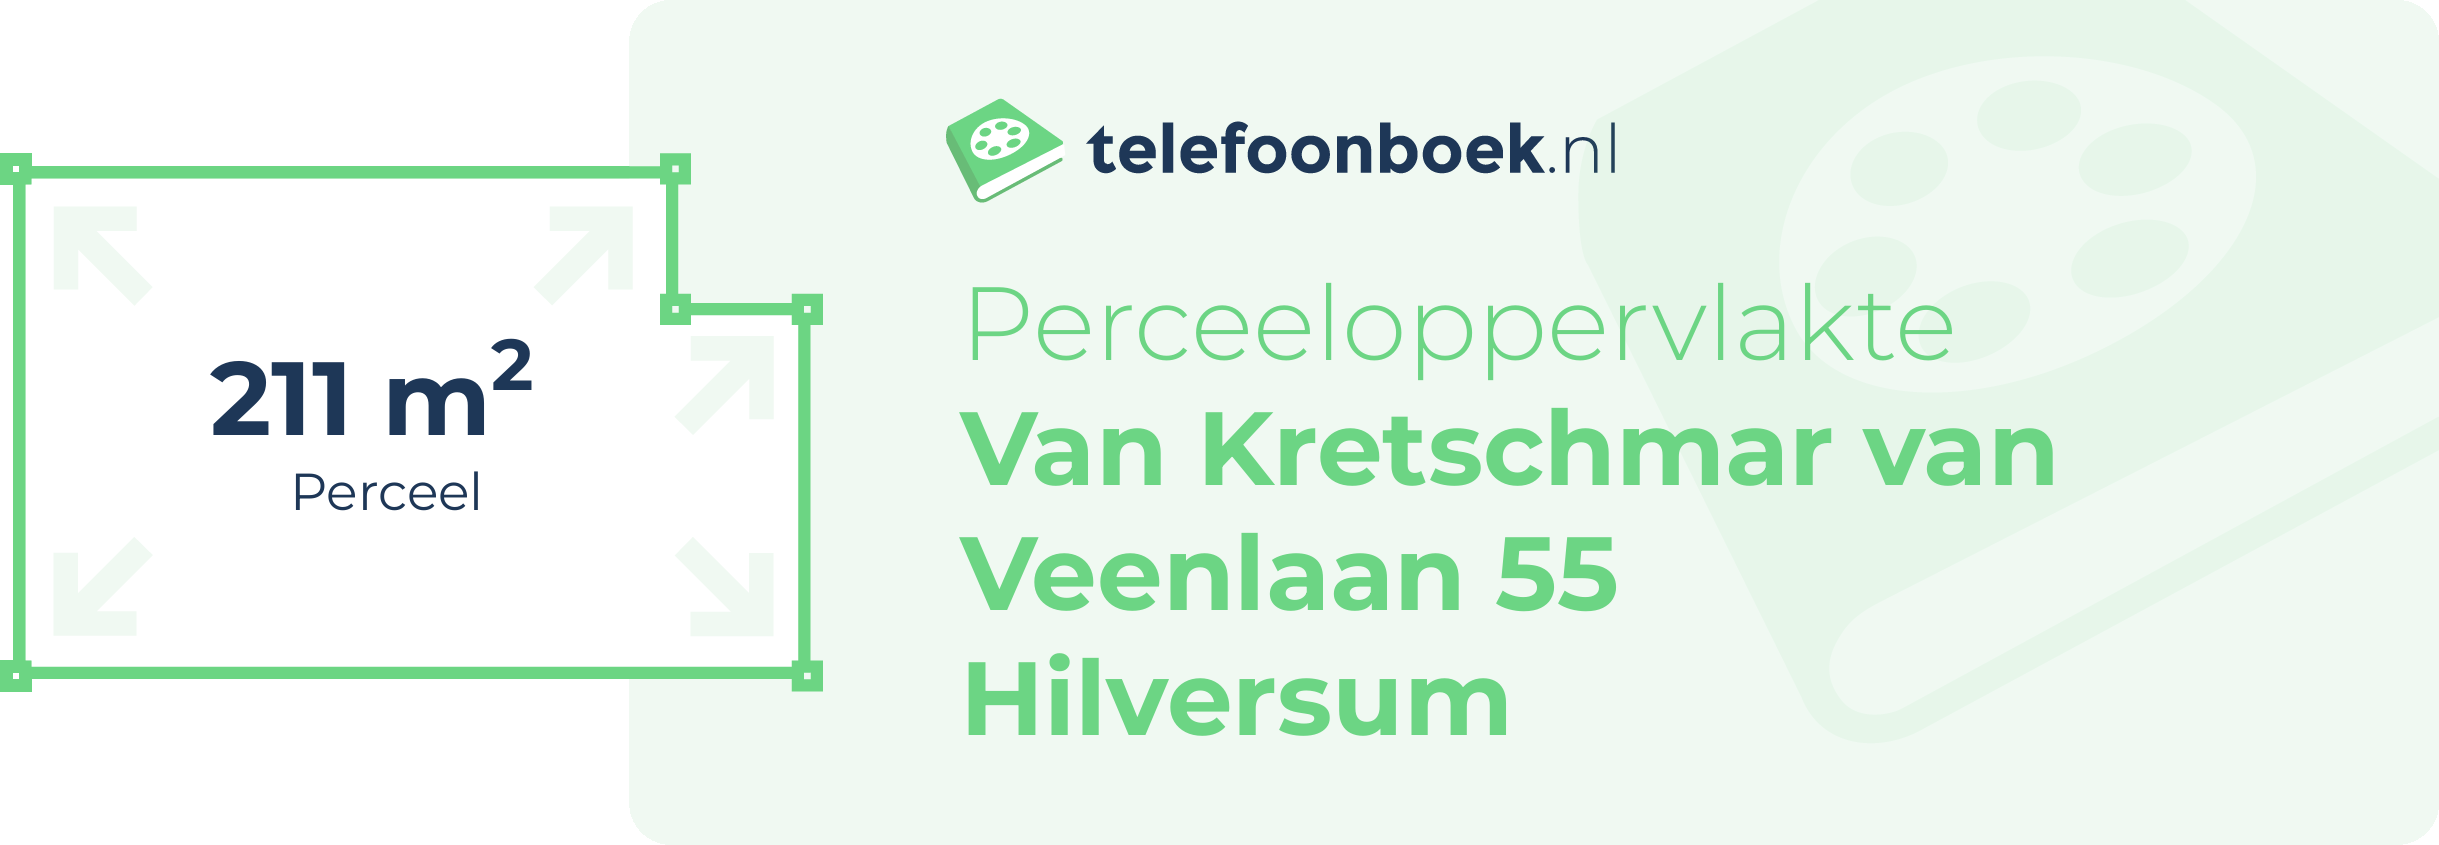 Perceeloppervlakte Van Kretschmar Van Veenlaan 55 Hilversum